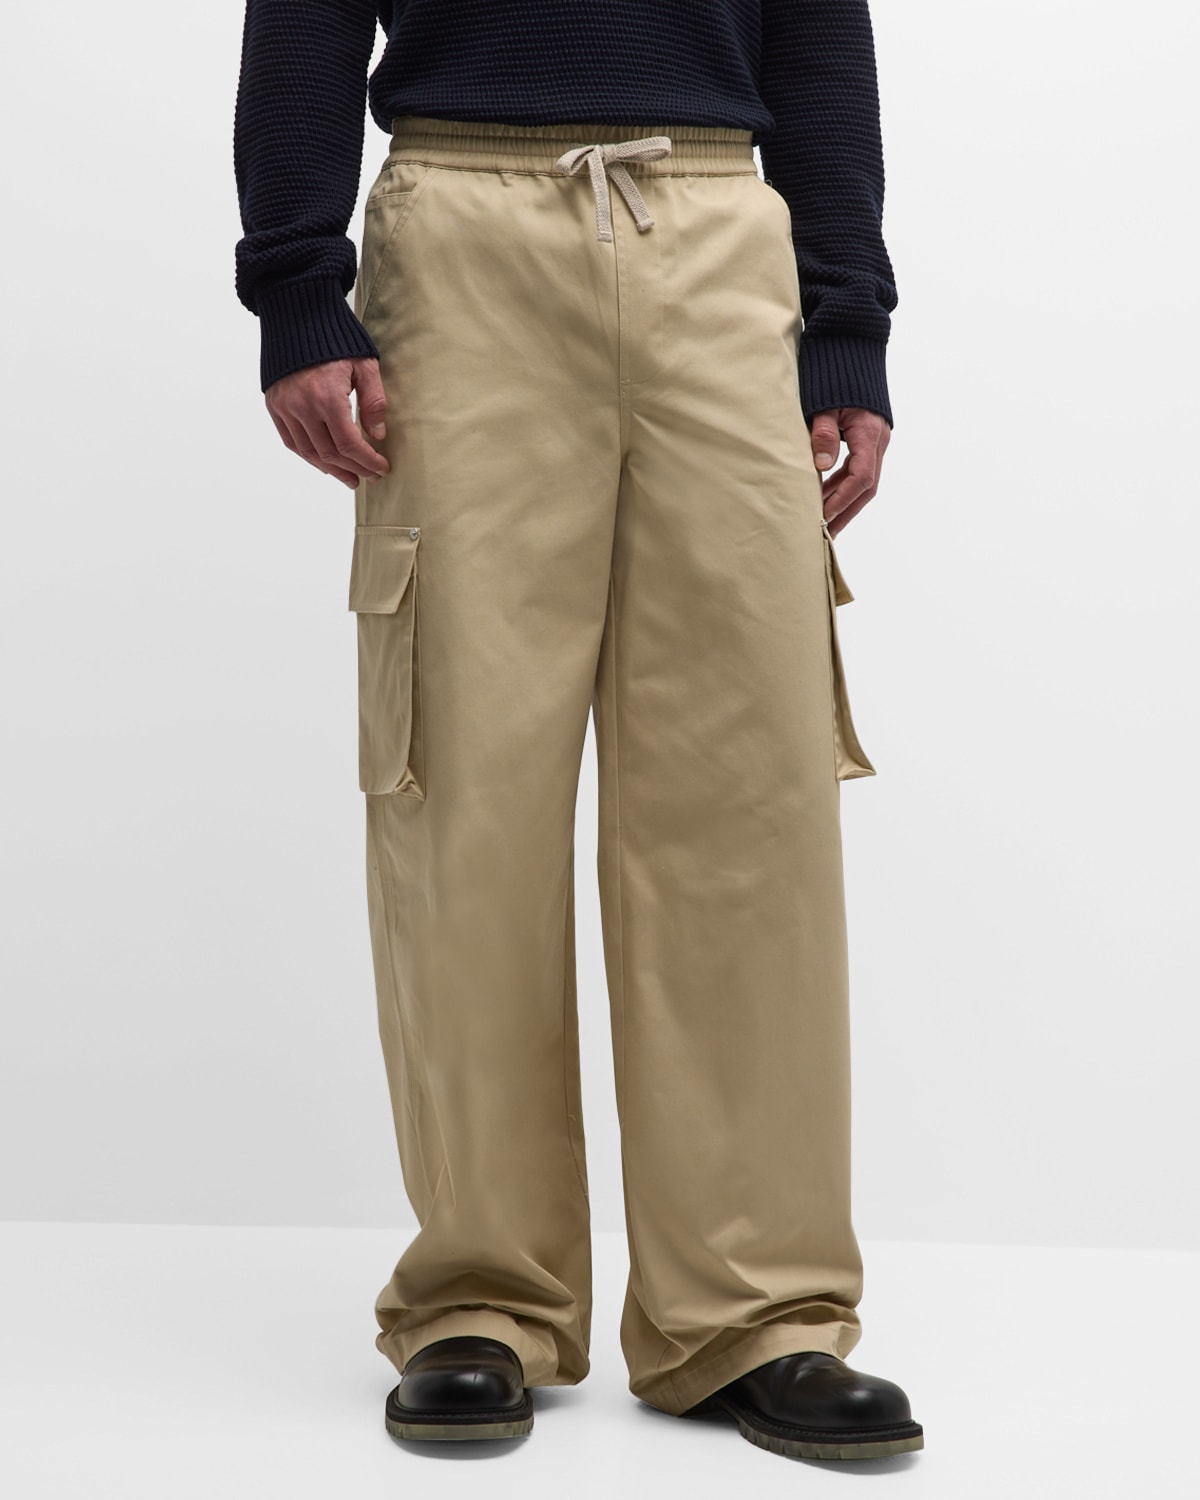 Men's Wide-Leg Drawstring Cargo Pants